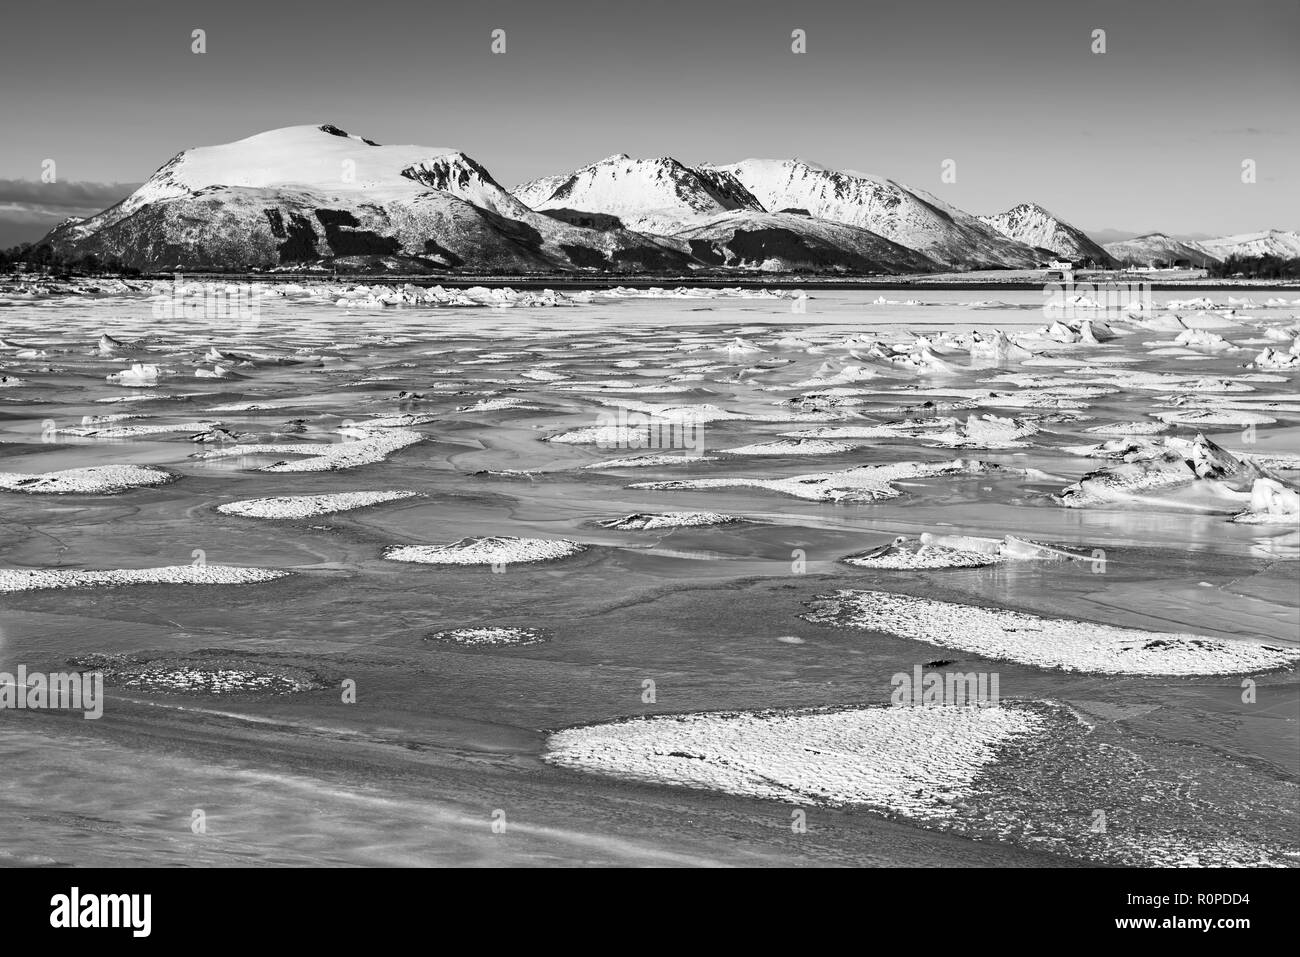 Vue sur lac gelé d'hiver magnifique avec les montagnes enneigées à îles Lofoten, dans le Nord de la Norvège. Arrière-plan de saison. Noir et blanc. Banque D'Images